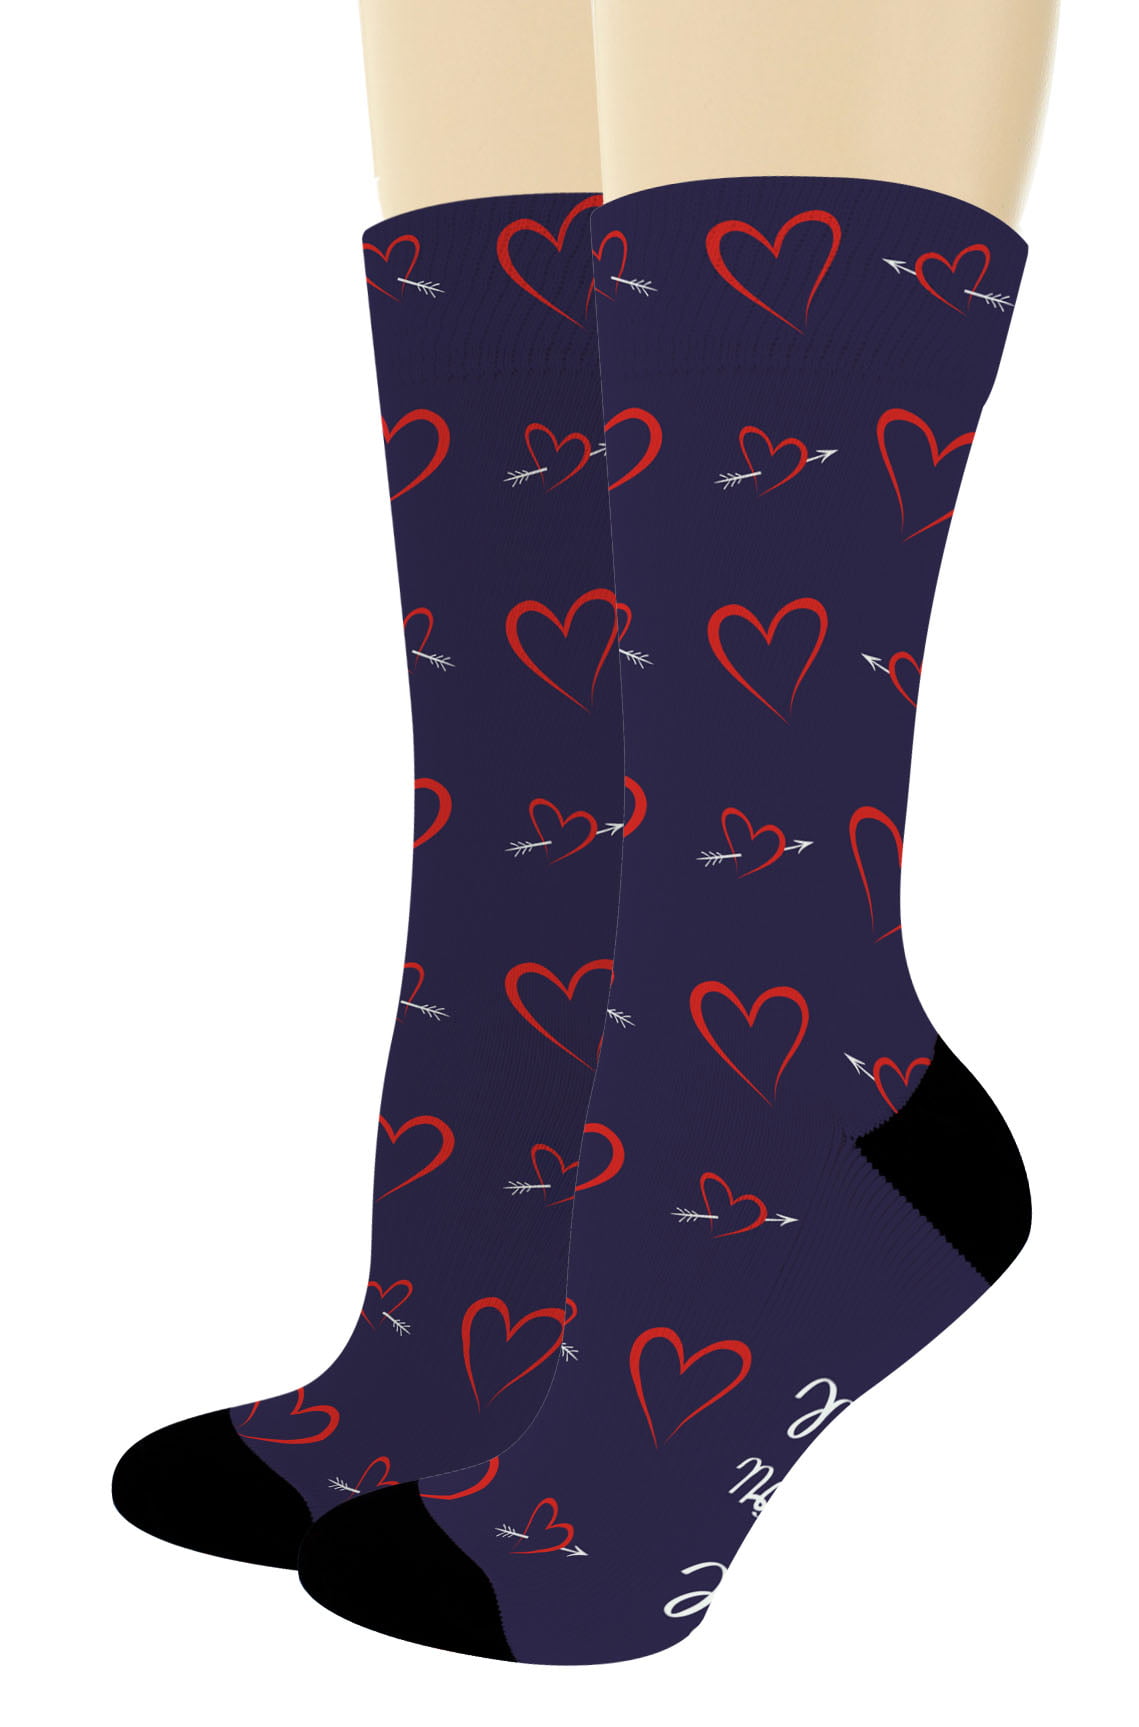 Birthday gift for boyfriend cotton Socks Anniversary party valentines day giBDA 